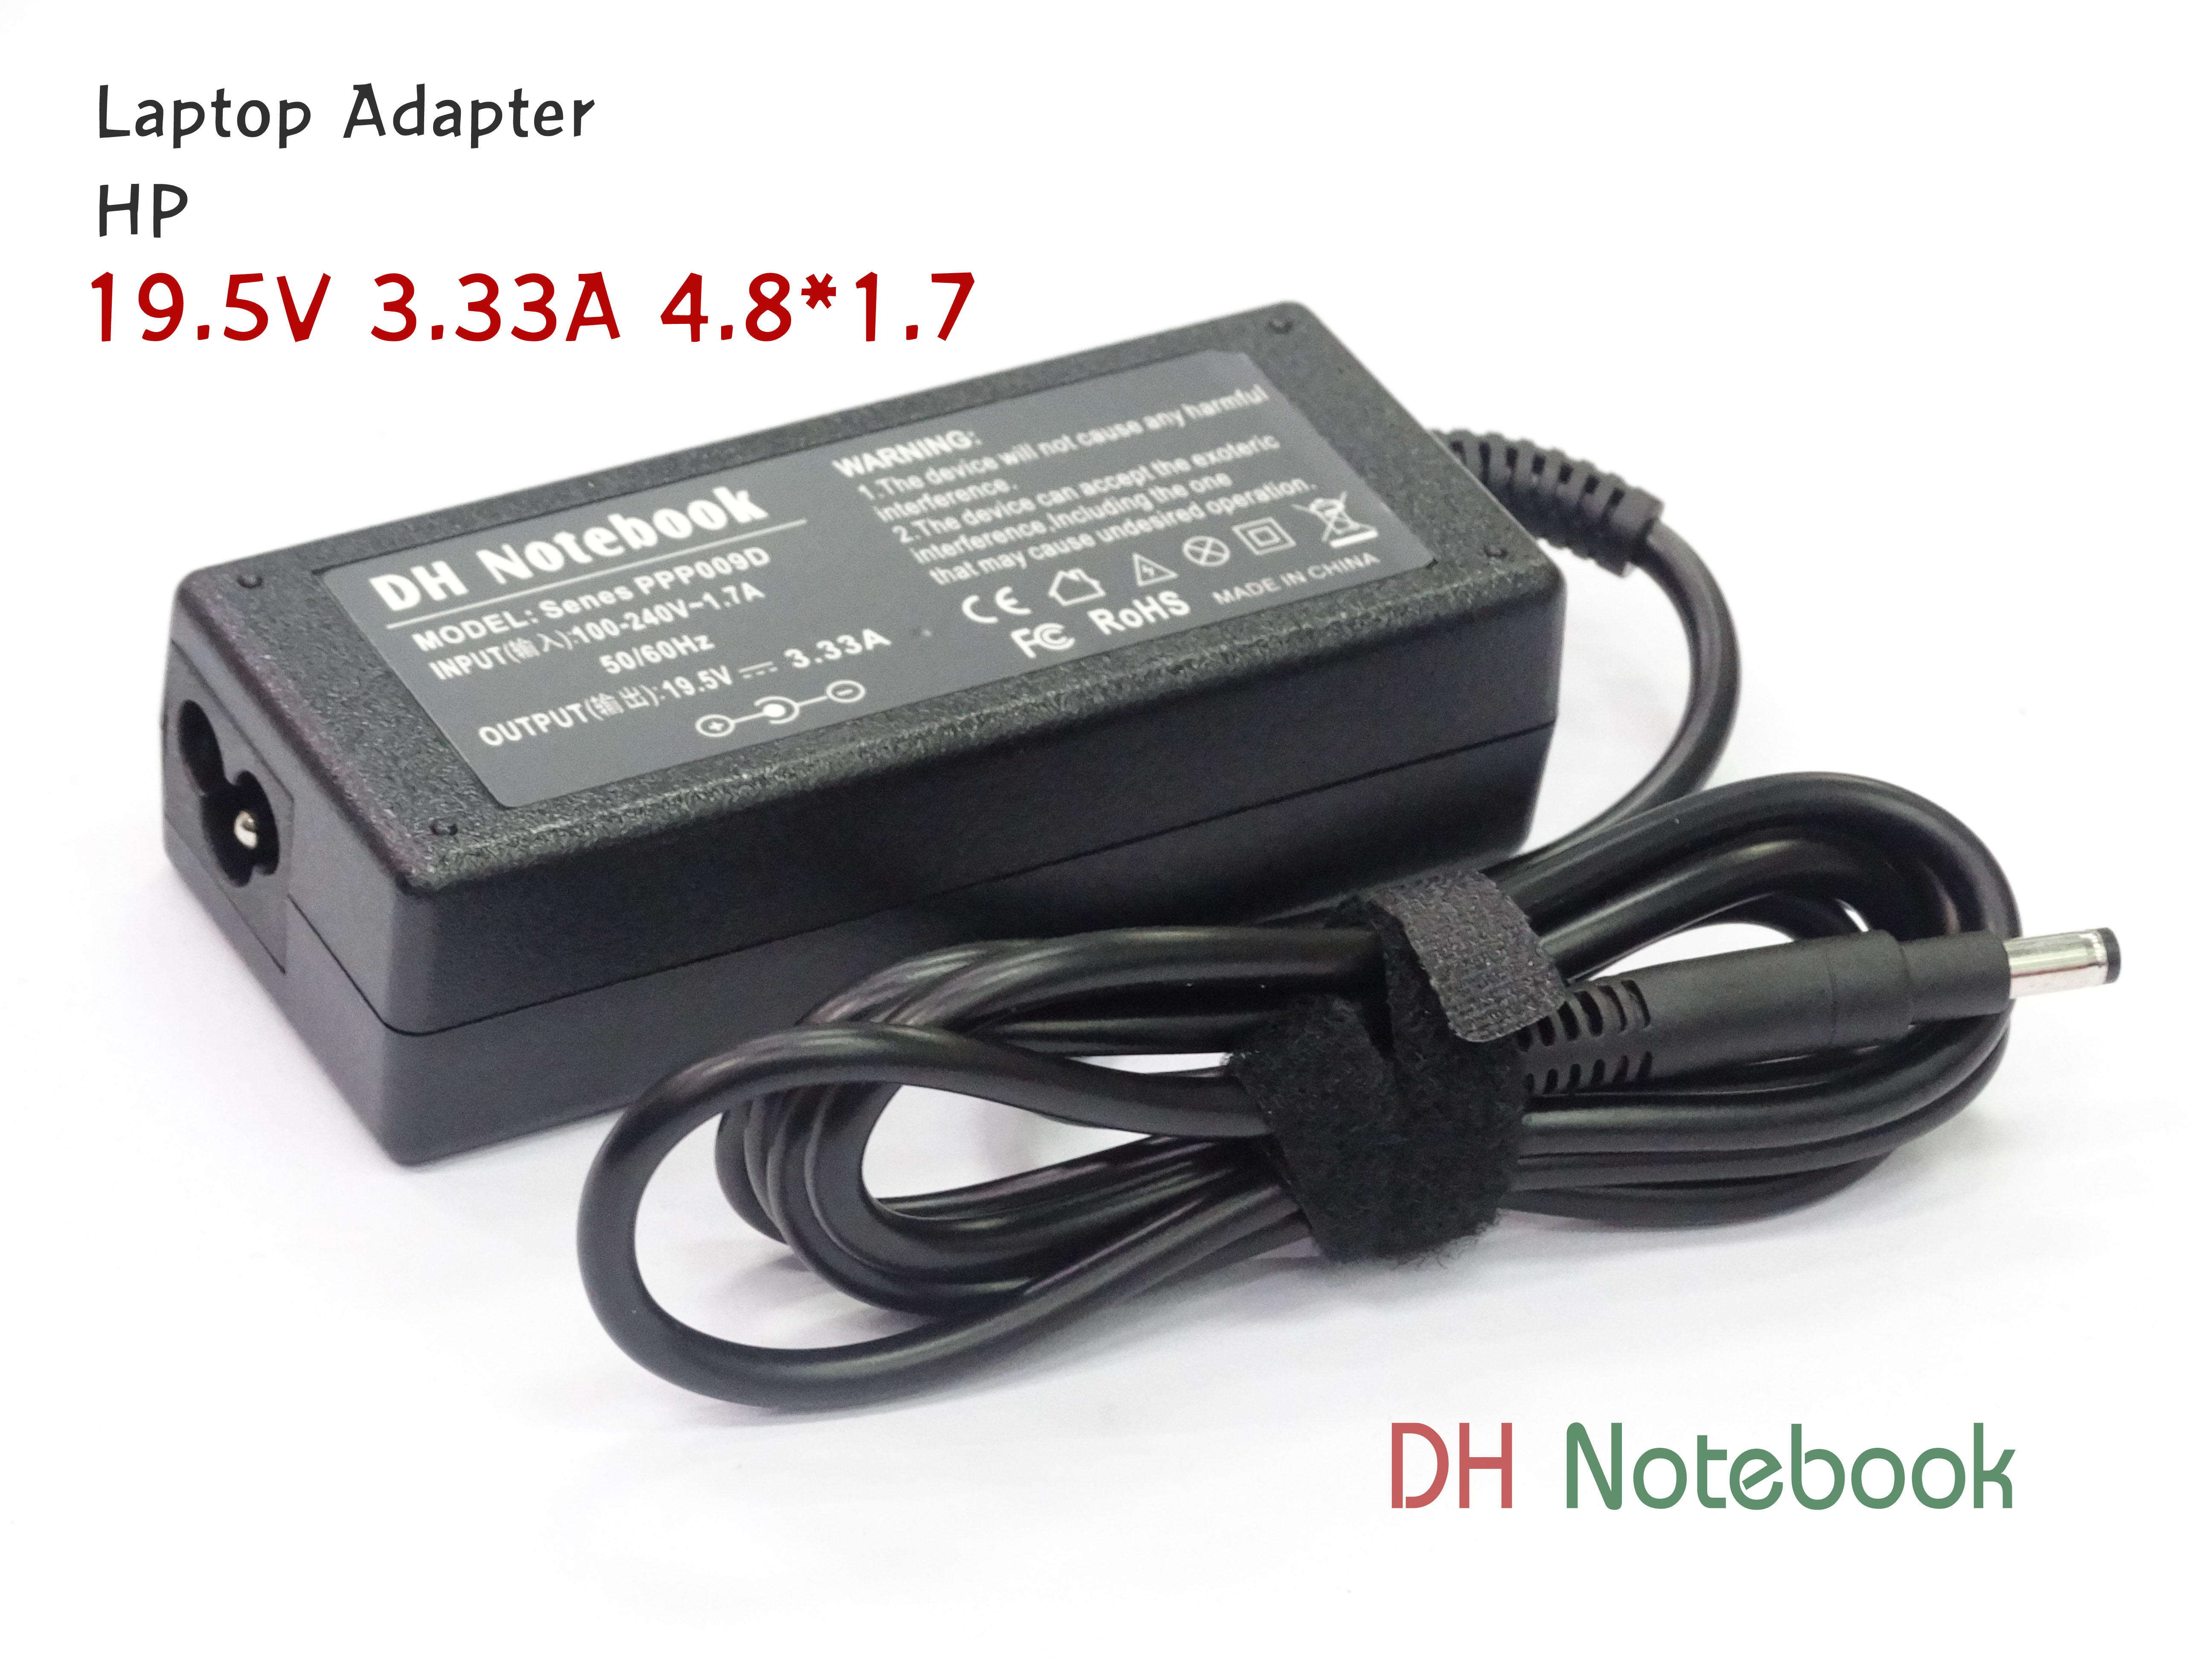 Adapter HP 19.5V 3.33A (4.8*1.7)